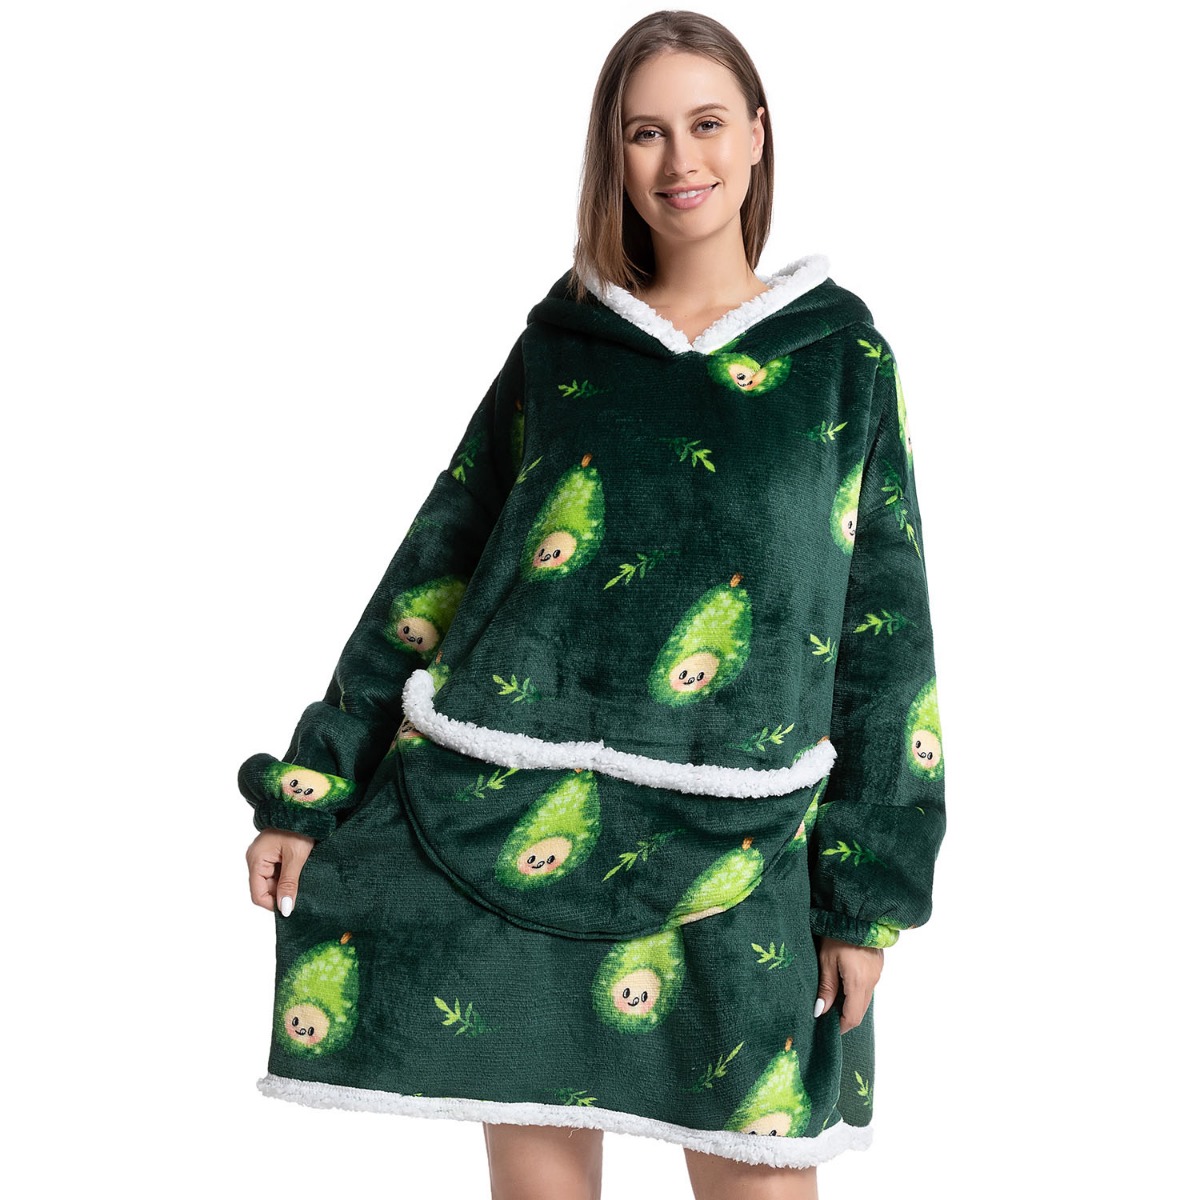 The Grinch Oversized Blanket Hoodie Kids Girls Festive Wearable Fleece Green